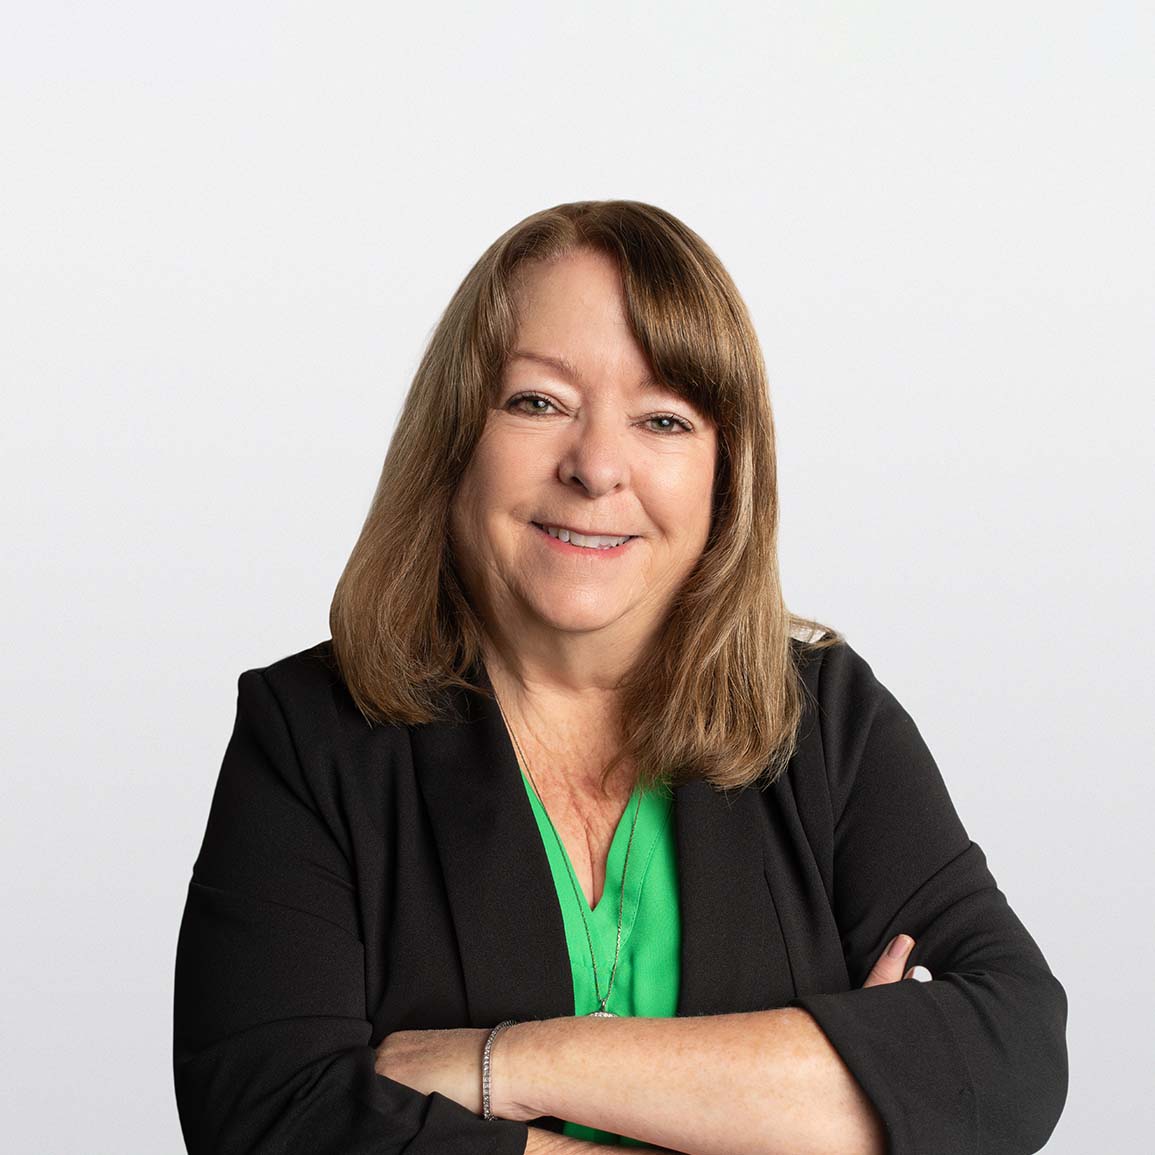 Image of Julie Scott, financial advisor on white background 